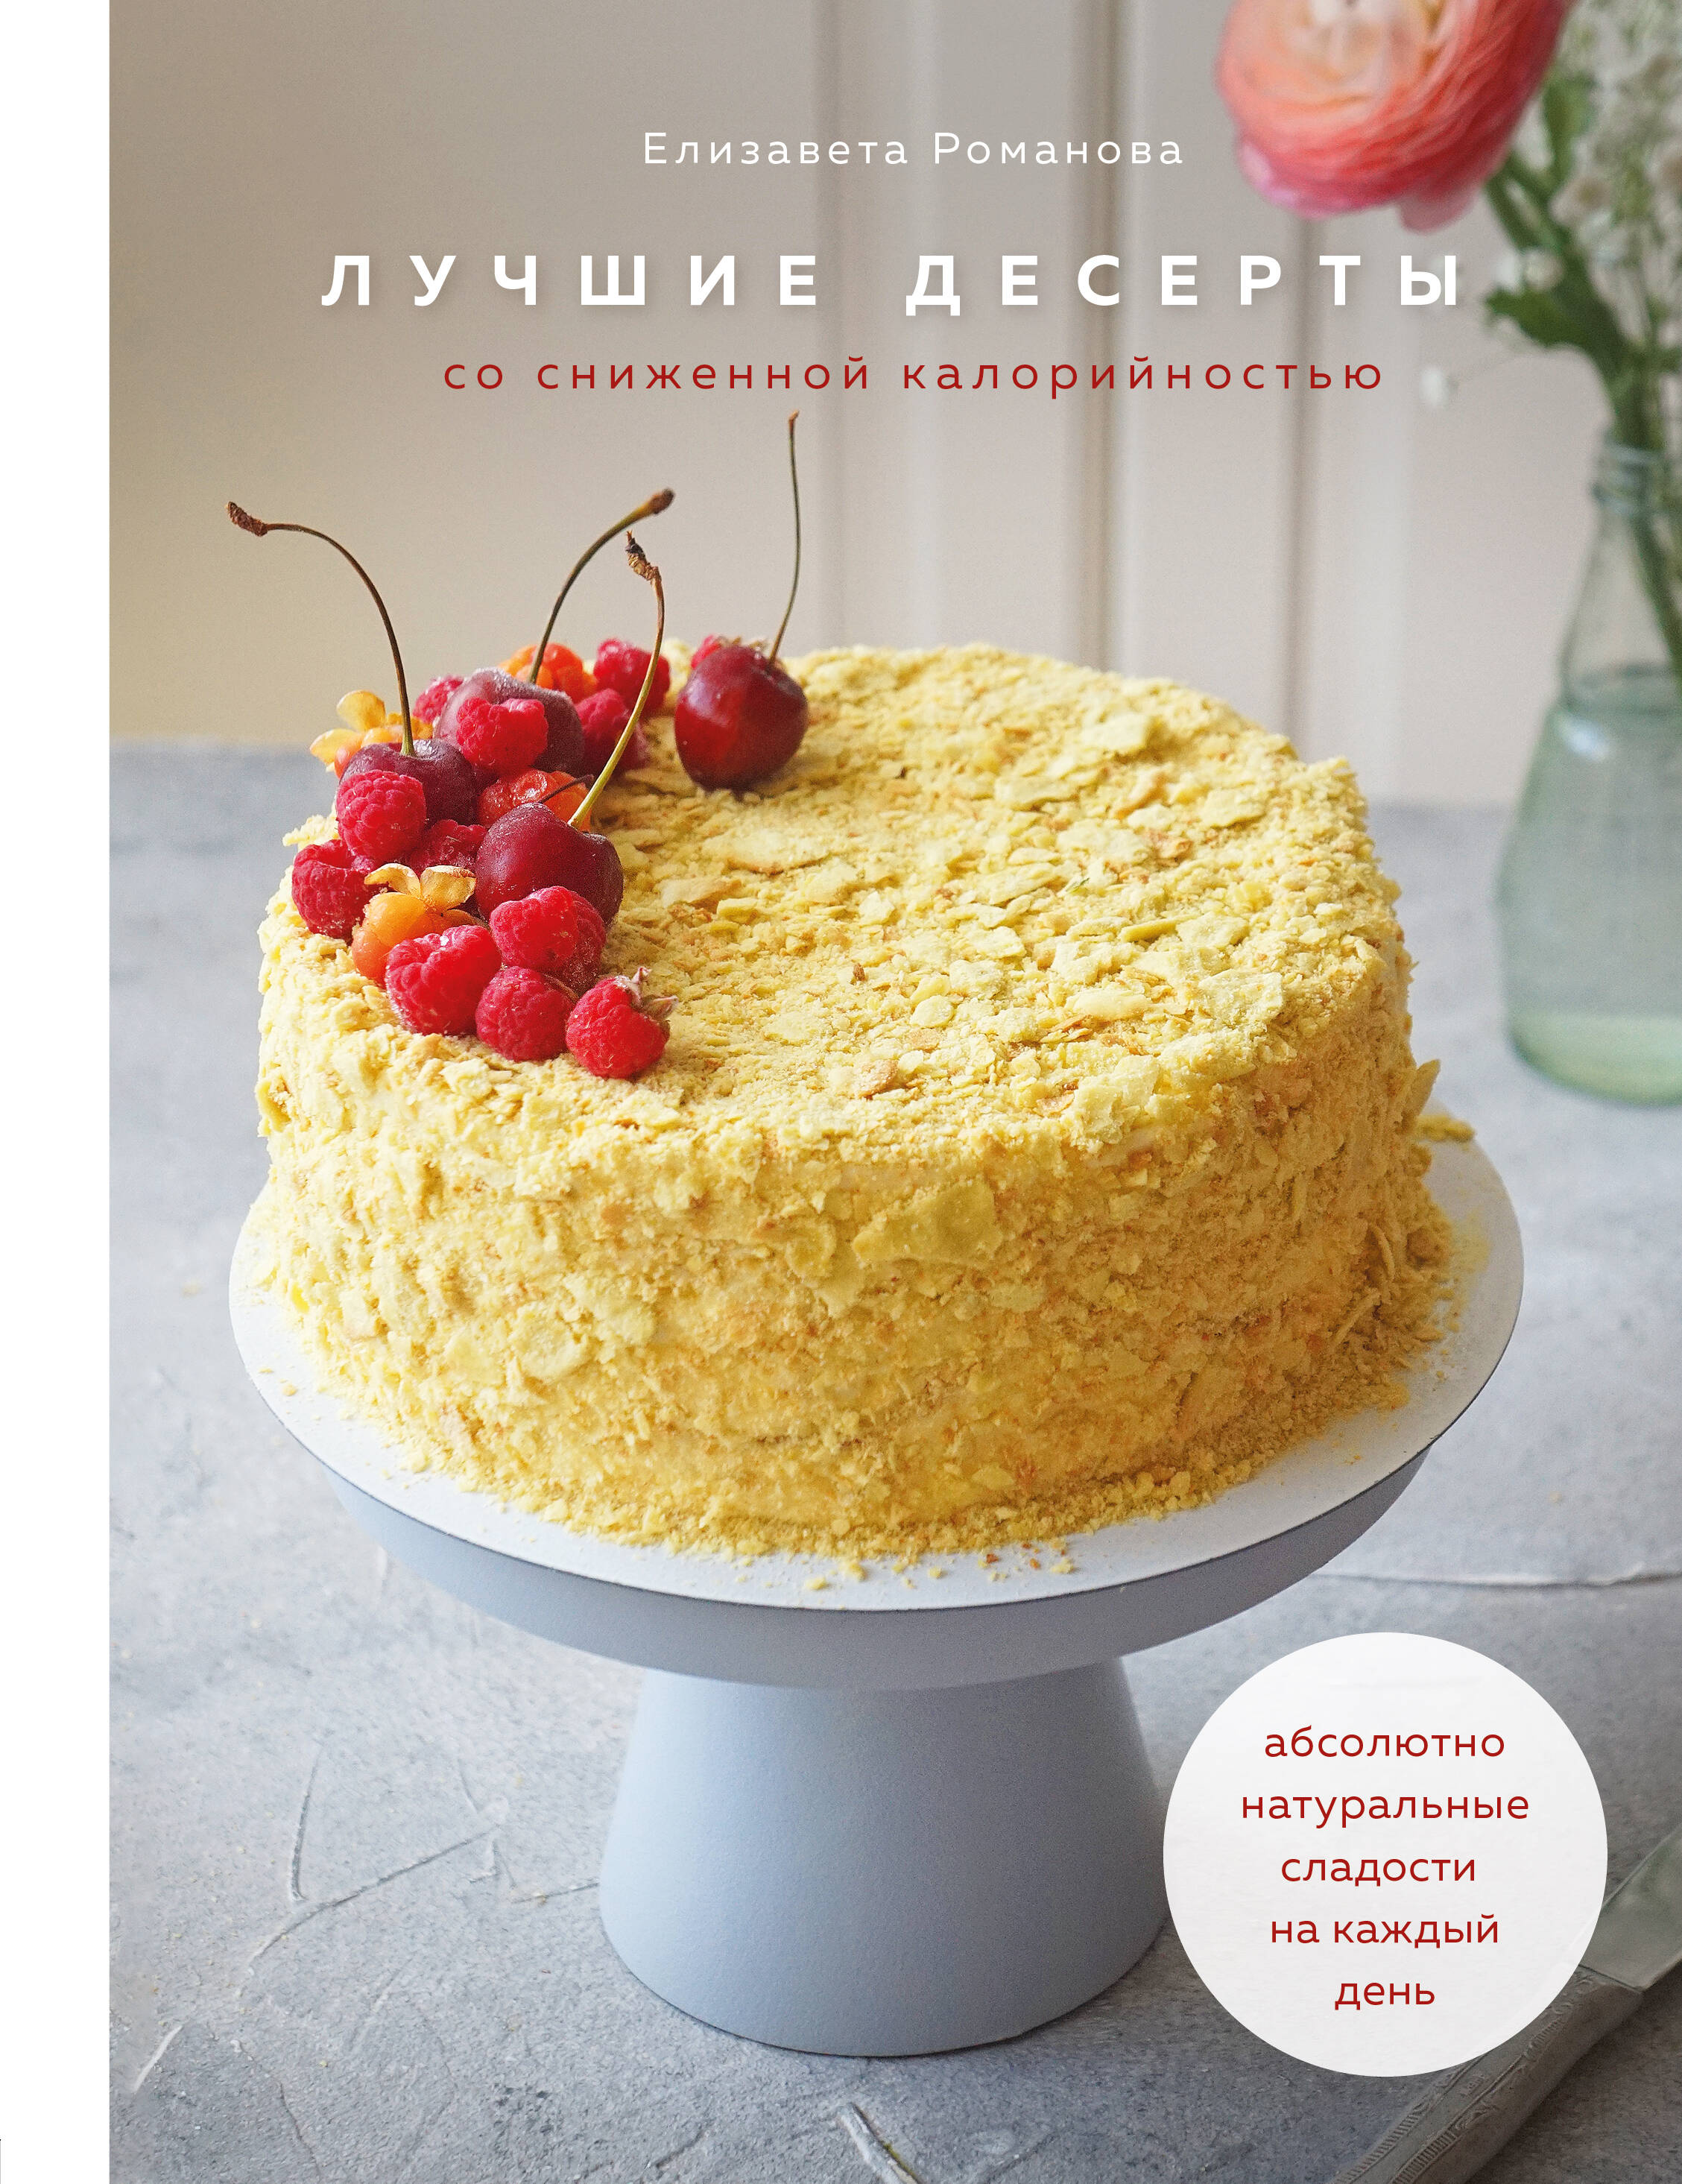 Романова Елизавета - Лучшие десерты со сниженной калорийностью. Абсолютно натуральные сладости на каждый день